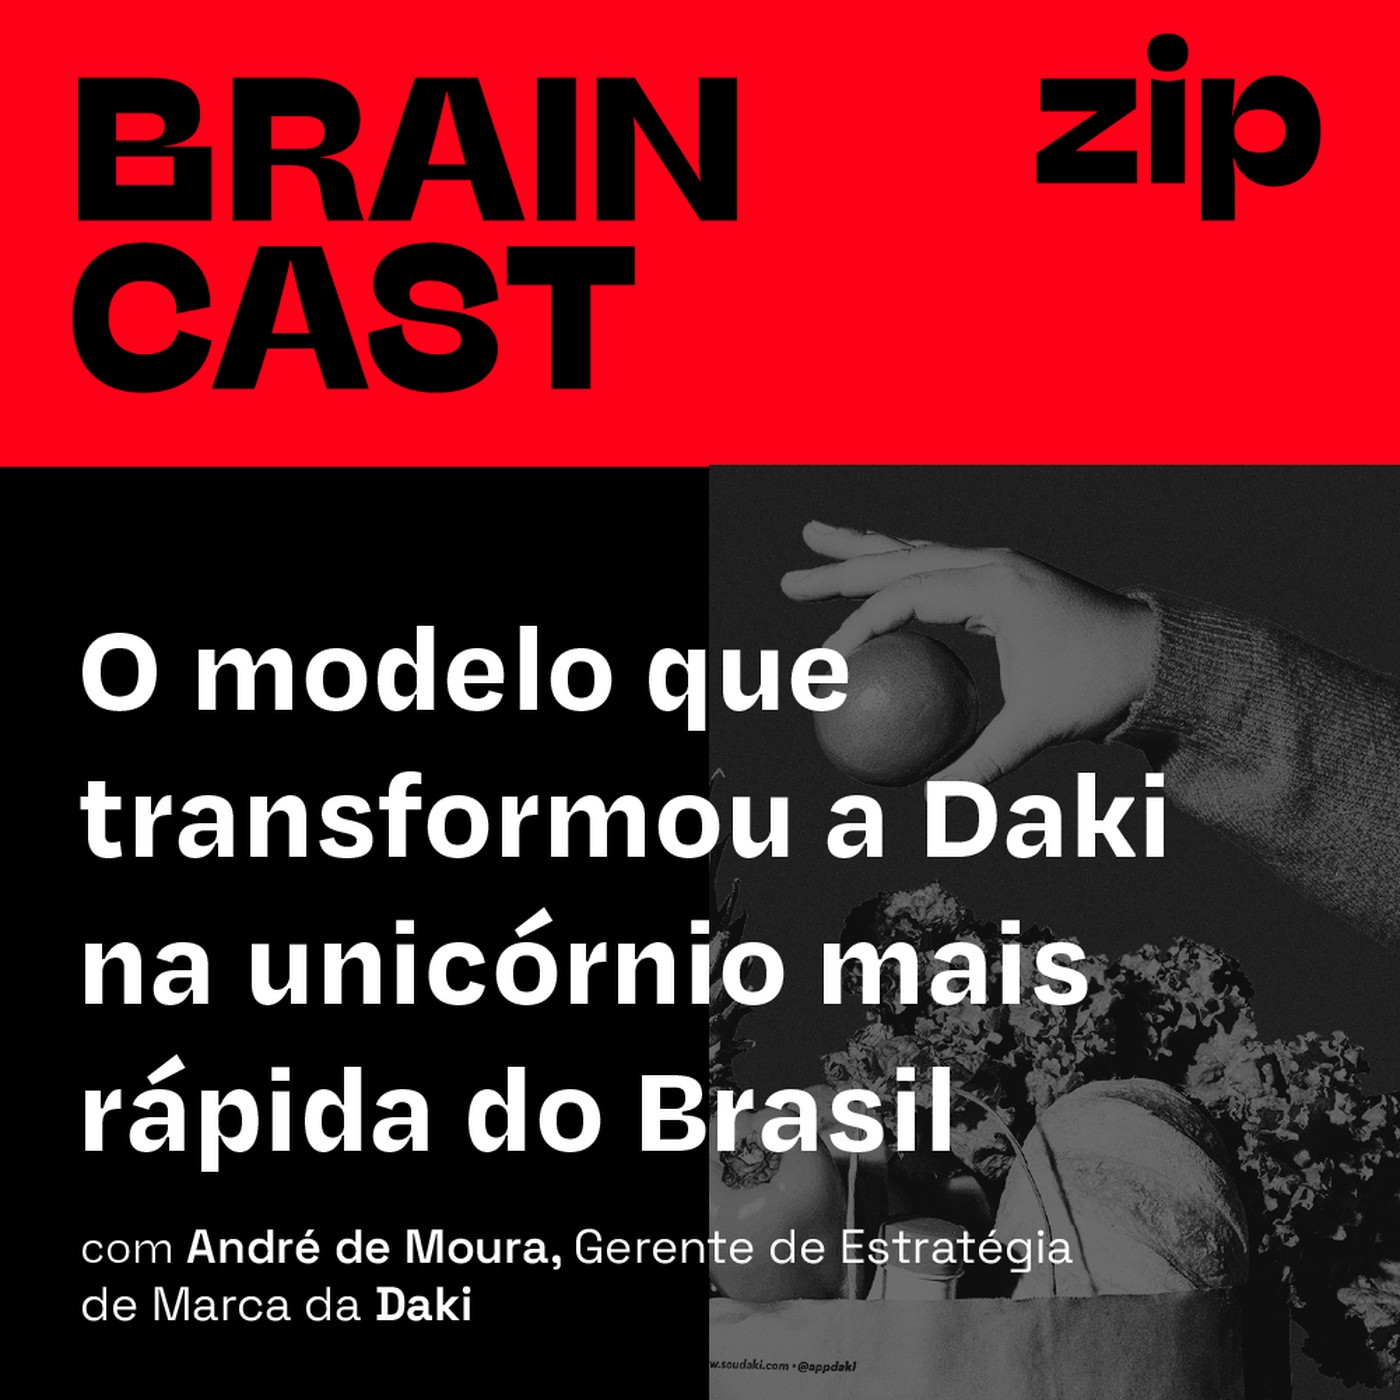 [zip] O modelo que transformou a Daki na unicórnio mais rápida do Brasil